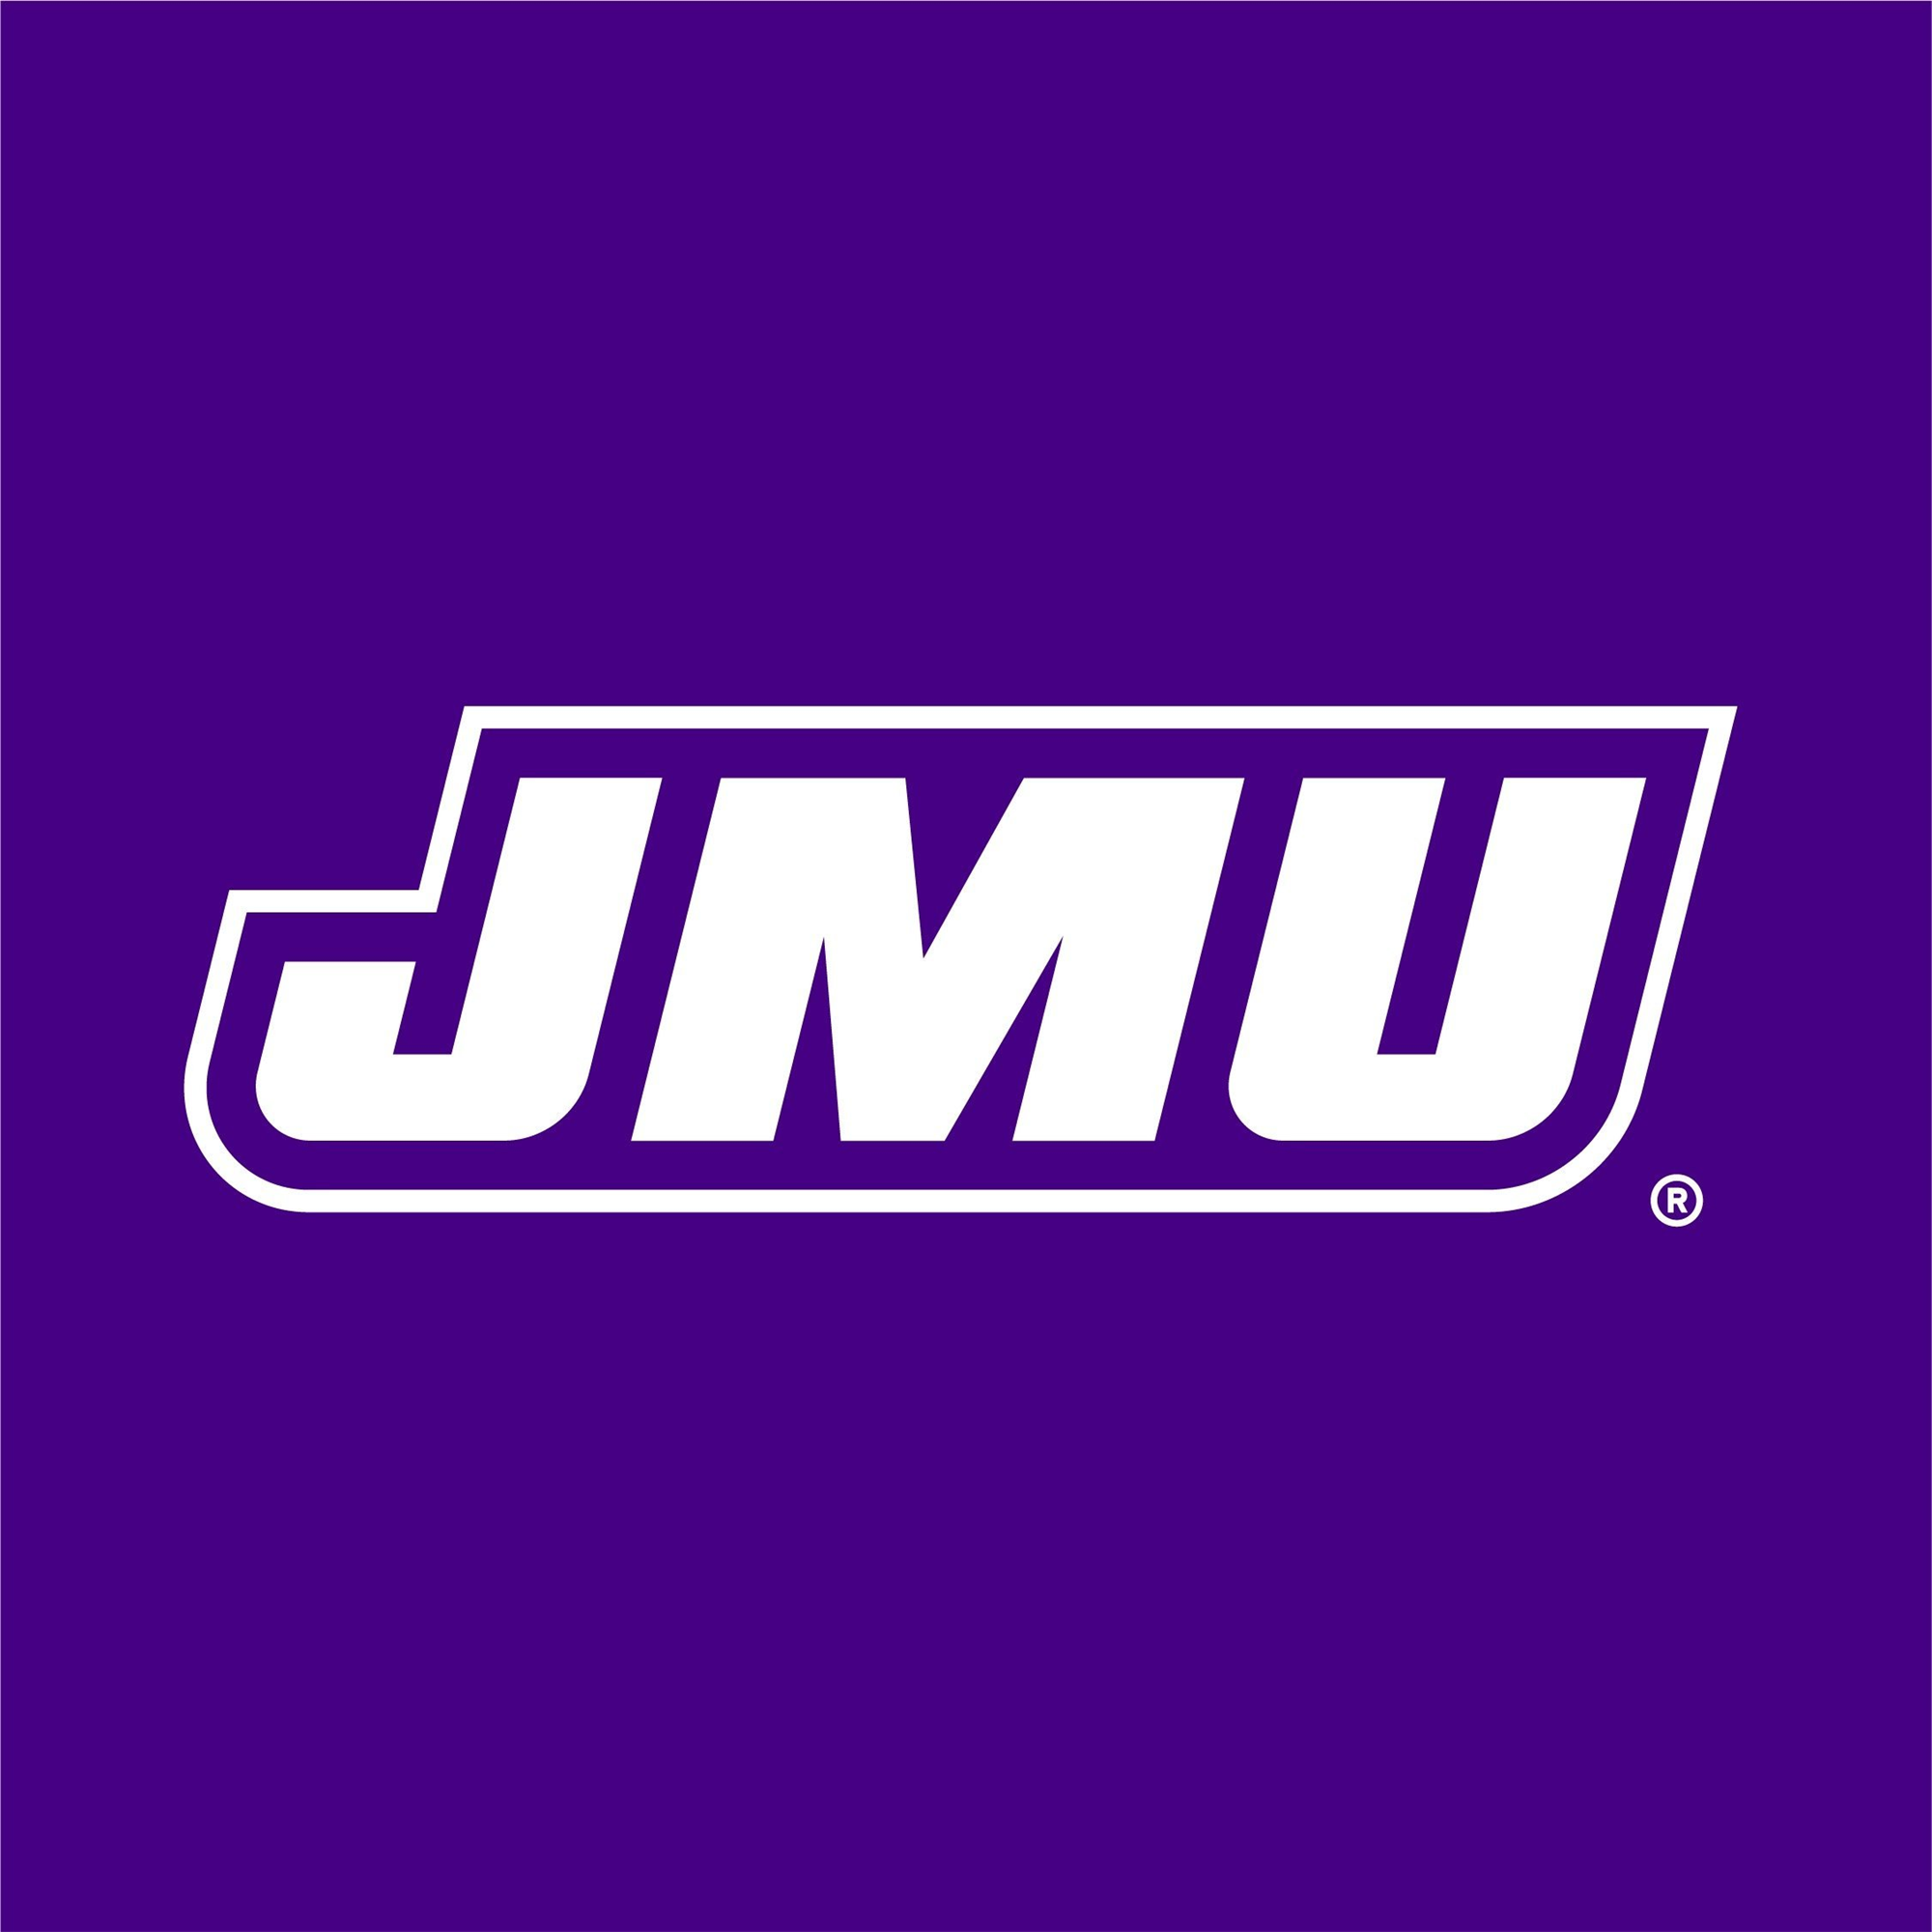 James Madison University Logo Image.